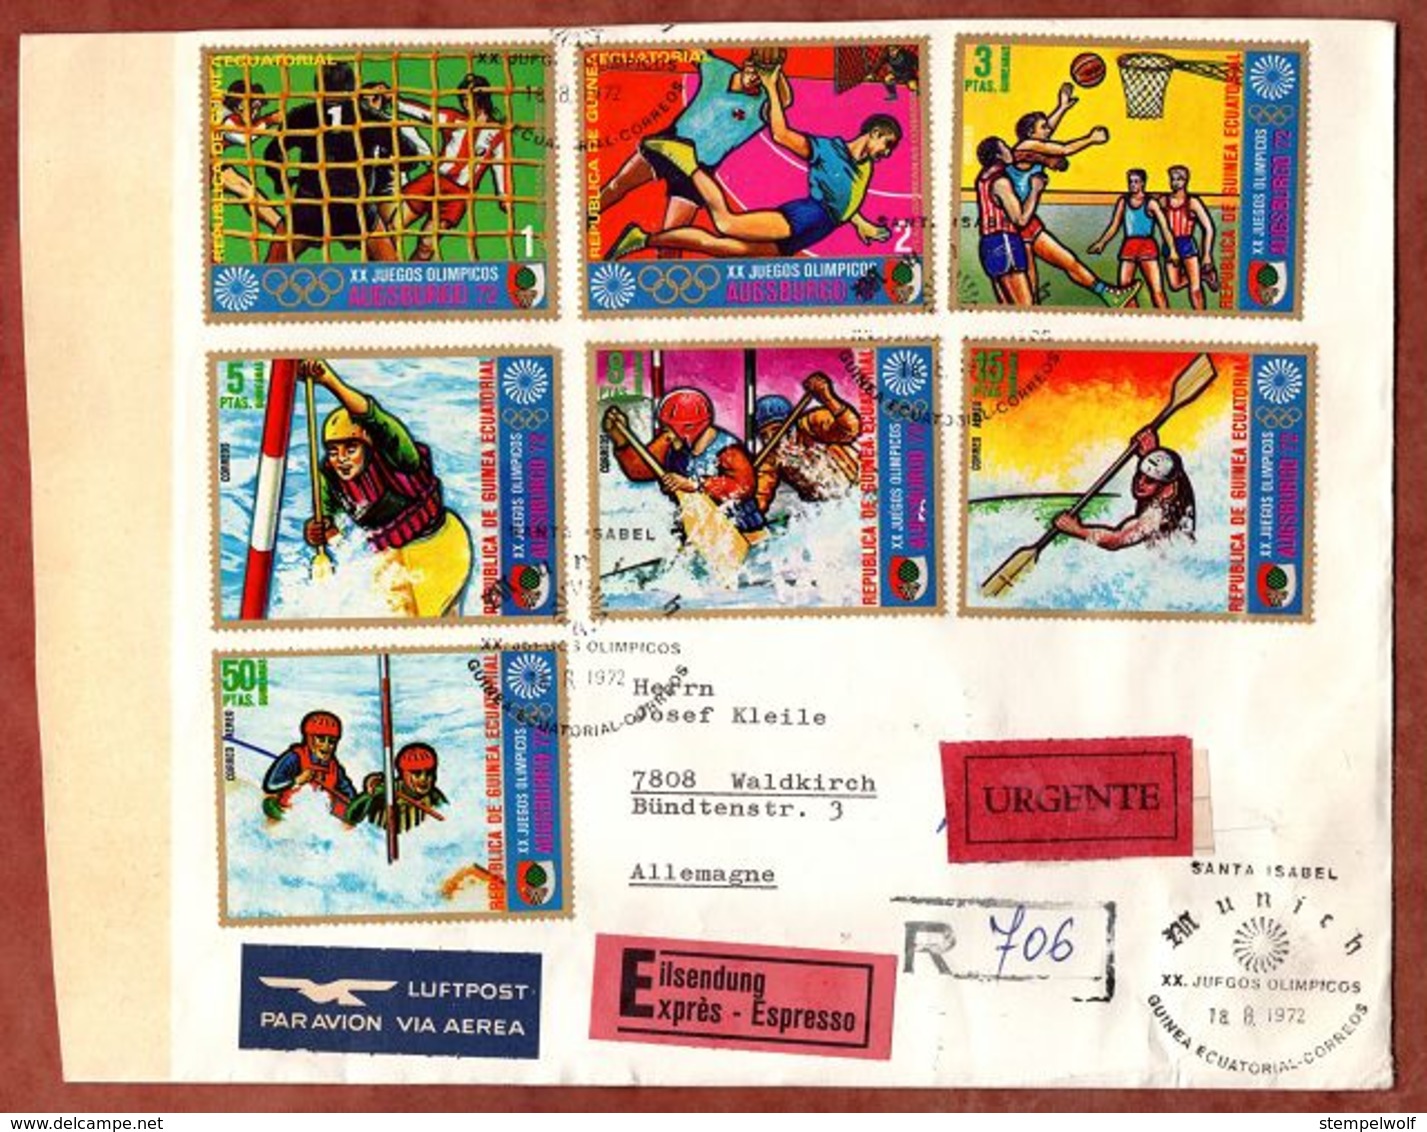 Luftpost, Expres, Einschreiben Reco, Satzbrief Olympiade Augsburg, SoSt Santa Isabel Malabo, Nach Waldkirch 1972 (89919) - Äquatorial-Guinea